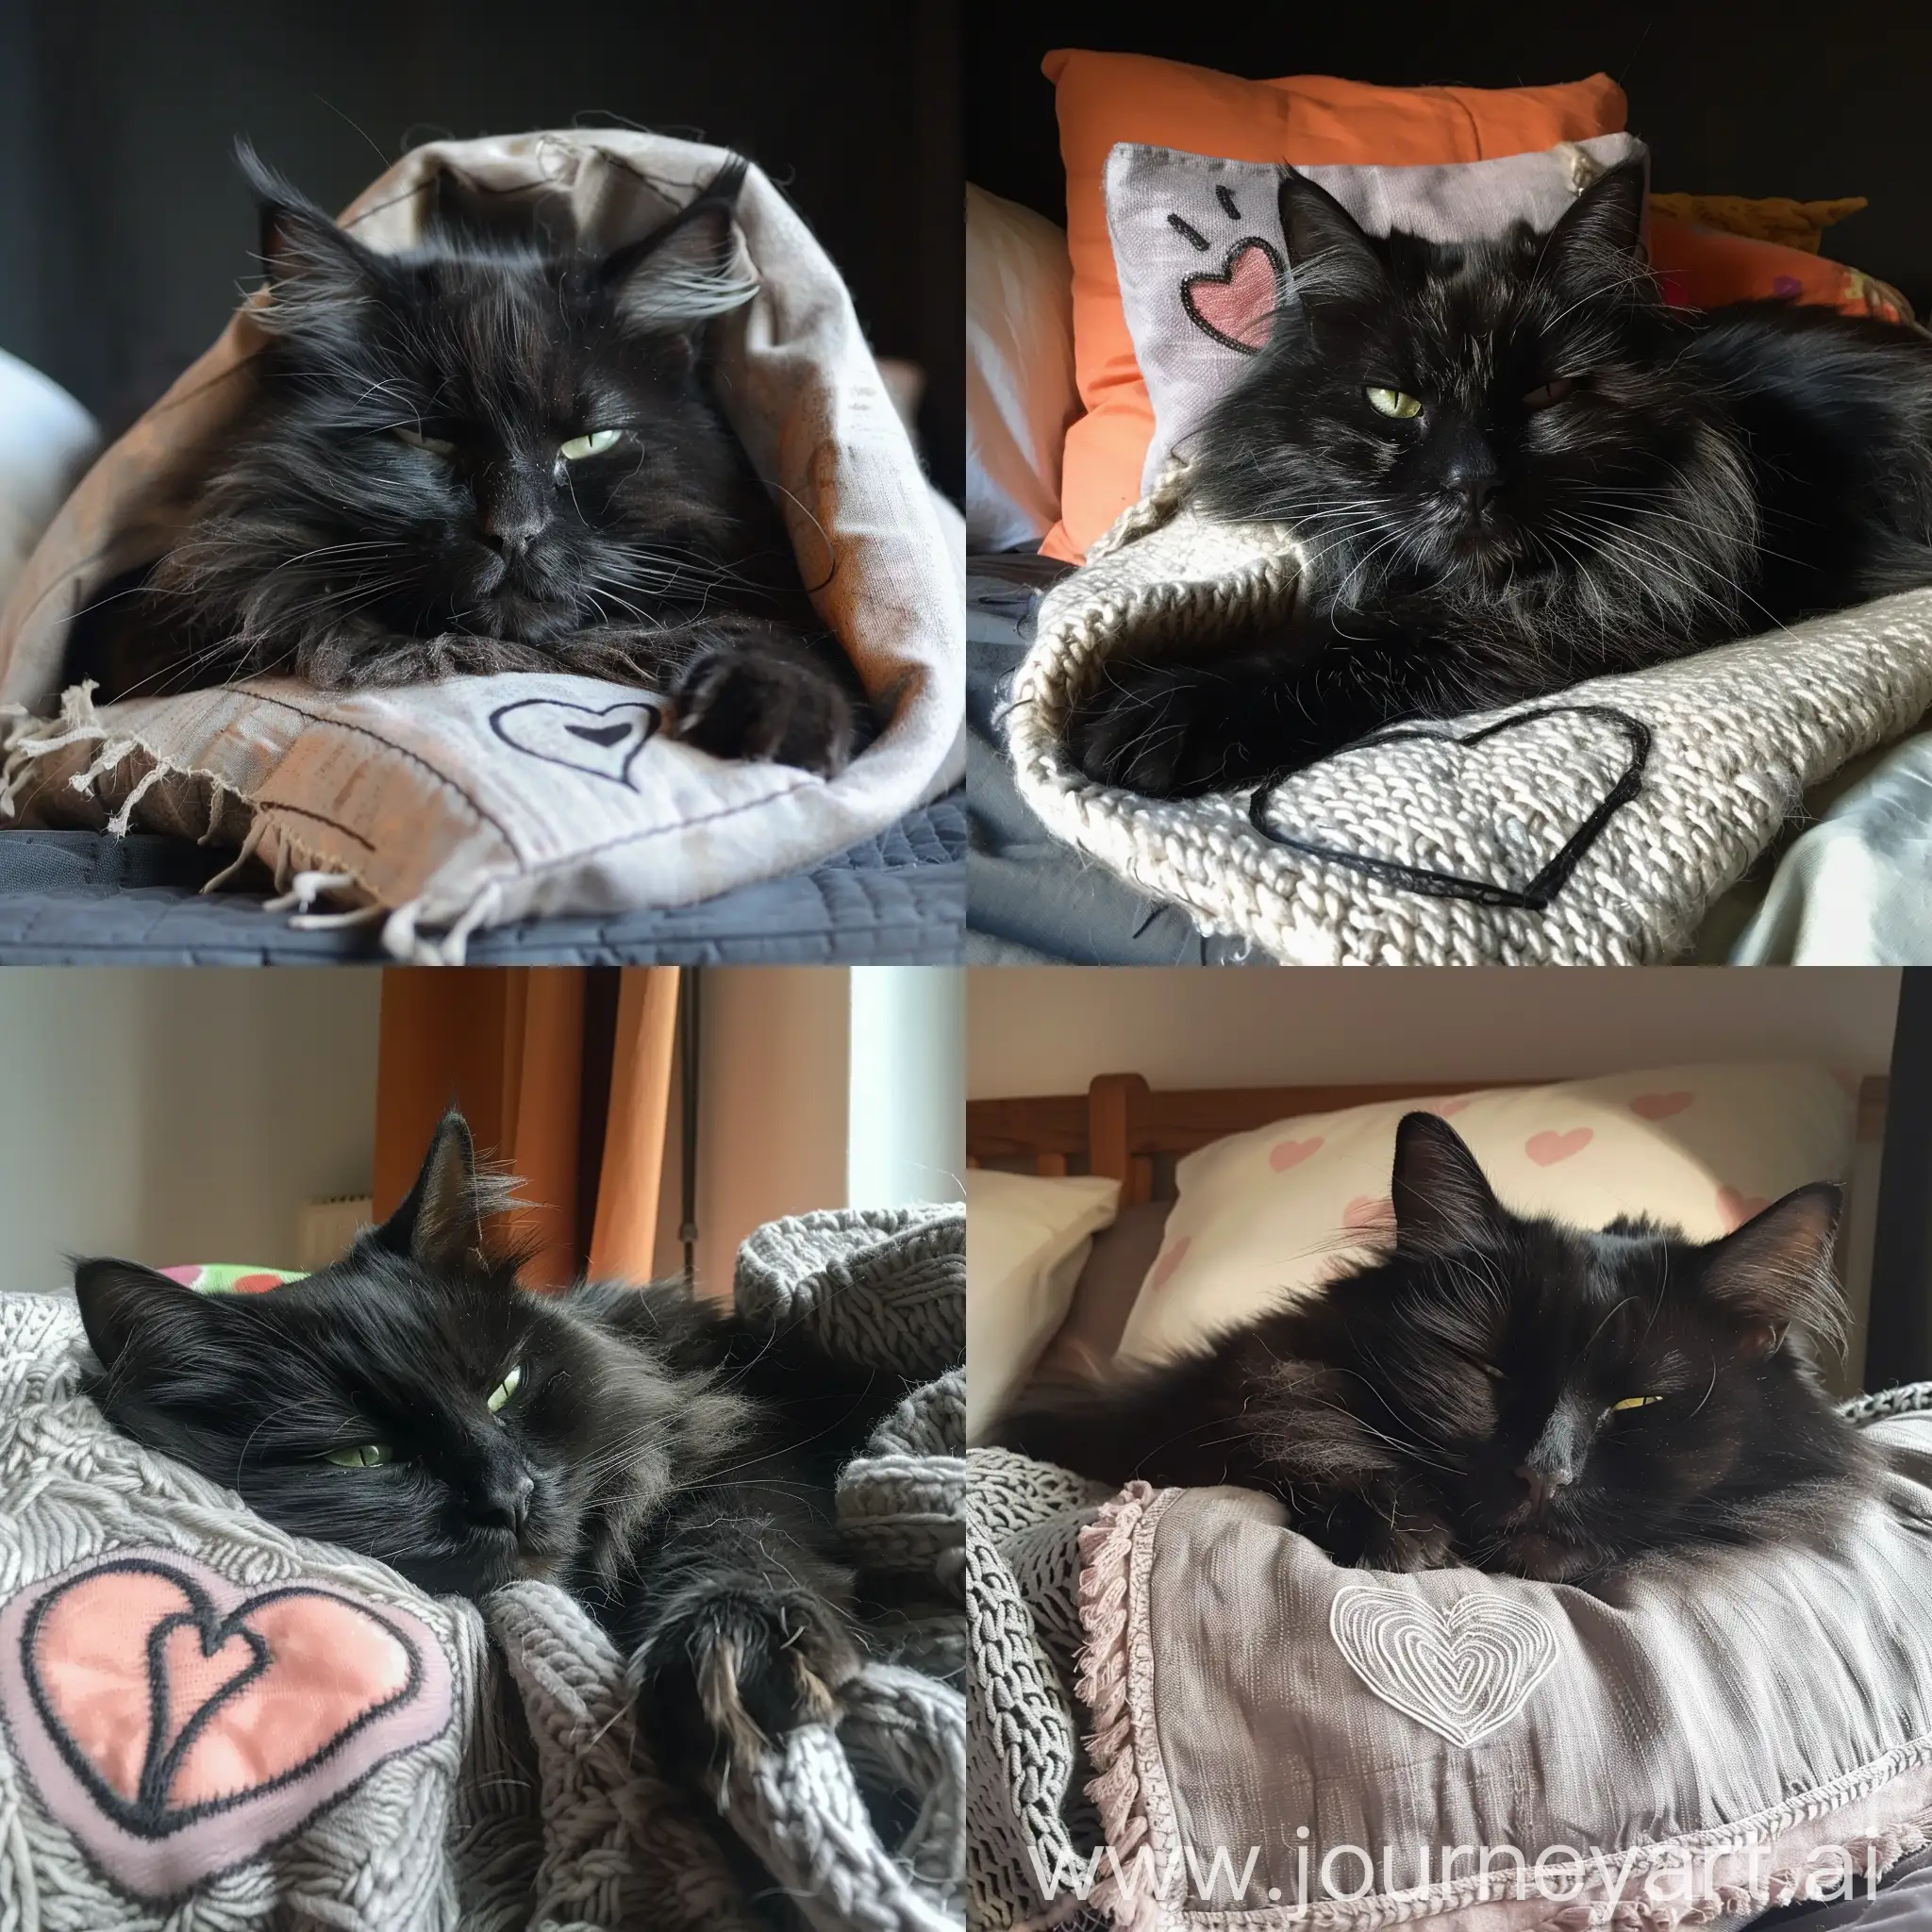 Чёрная, пушистая кошка с полузакрытыми зелёными глазами засыпает на подушке, укрытая одеялом, на этом одеяле нарисовано сердечко